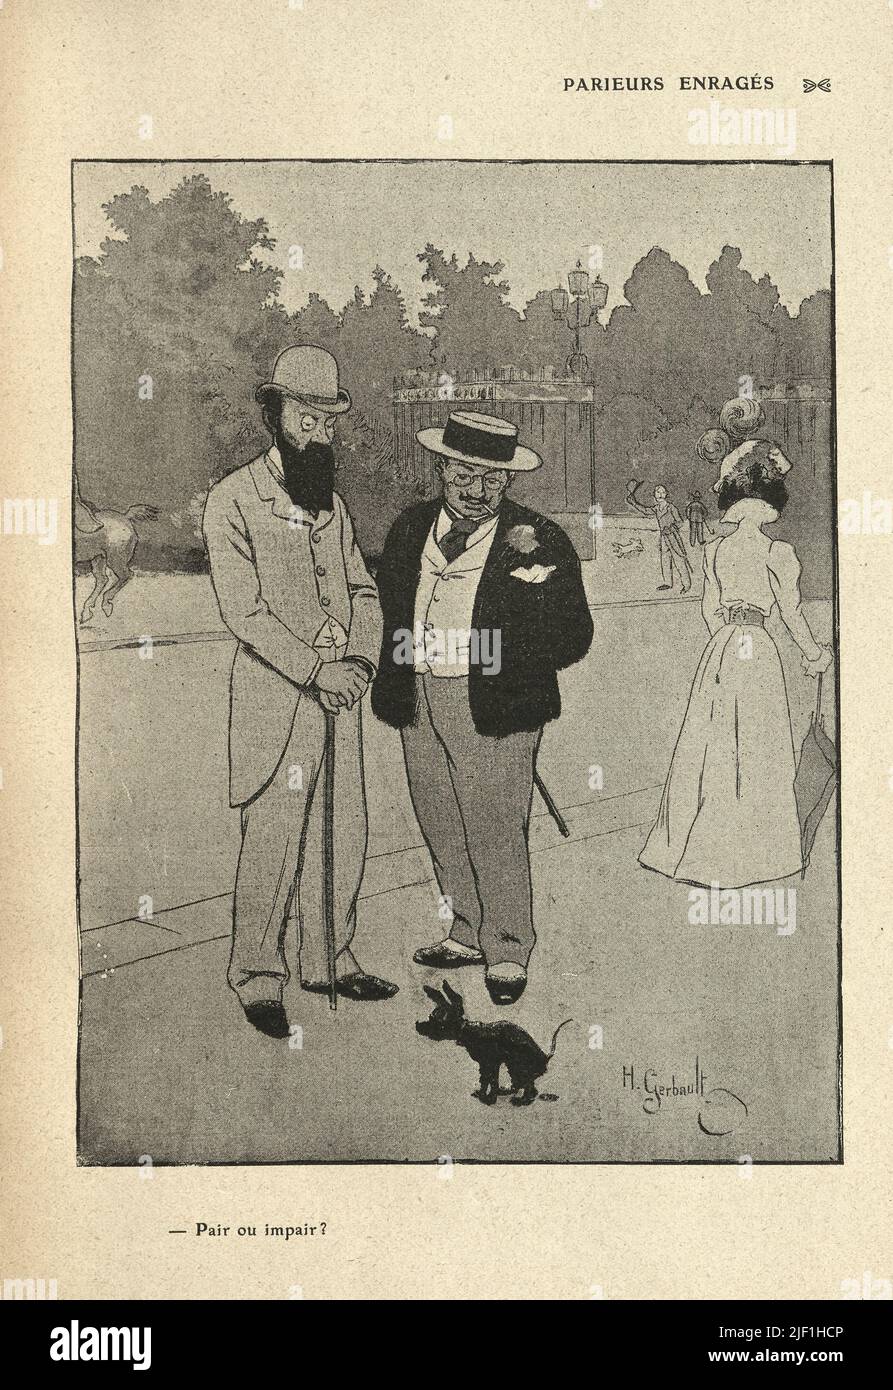 Vintage francés de dibujos animados por Henry Gerbault, 1900s, dos hombres apostando a un perro perrito, Parieurs enragés. ¿Par o deteriorar? Apuestas rabiosas. ¿Incluso o impar? Foto de stock